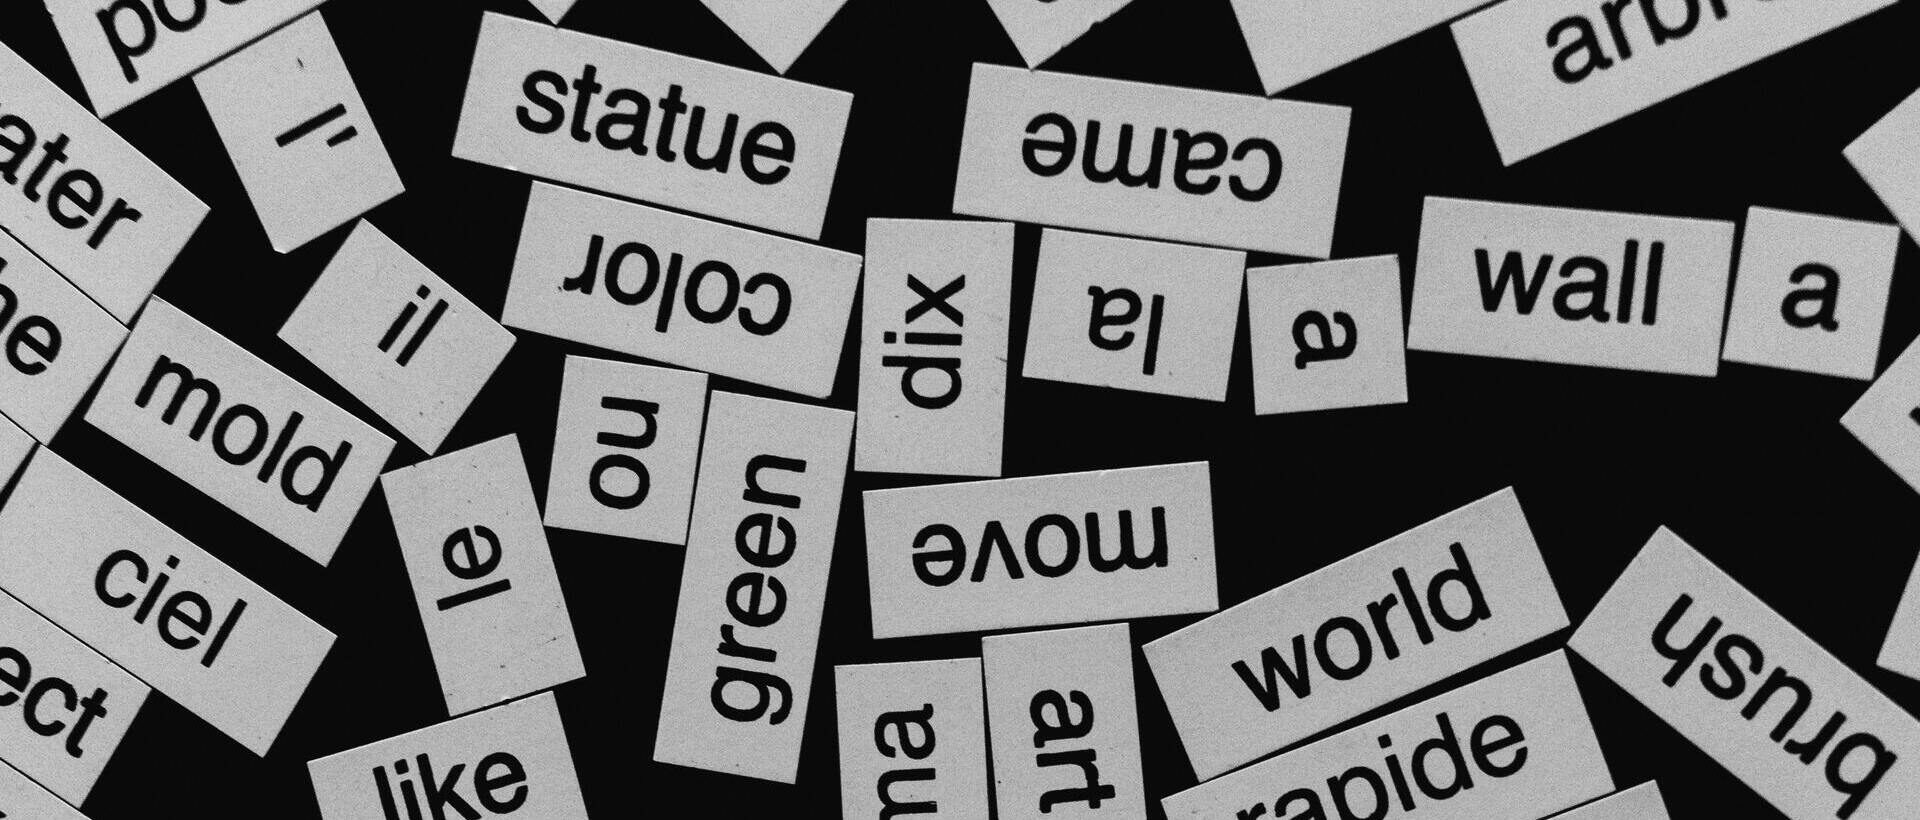 Wortausschnitte in Französisch und Englisch symbolisieren Mehrsprachigkeit auf Social Media